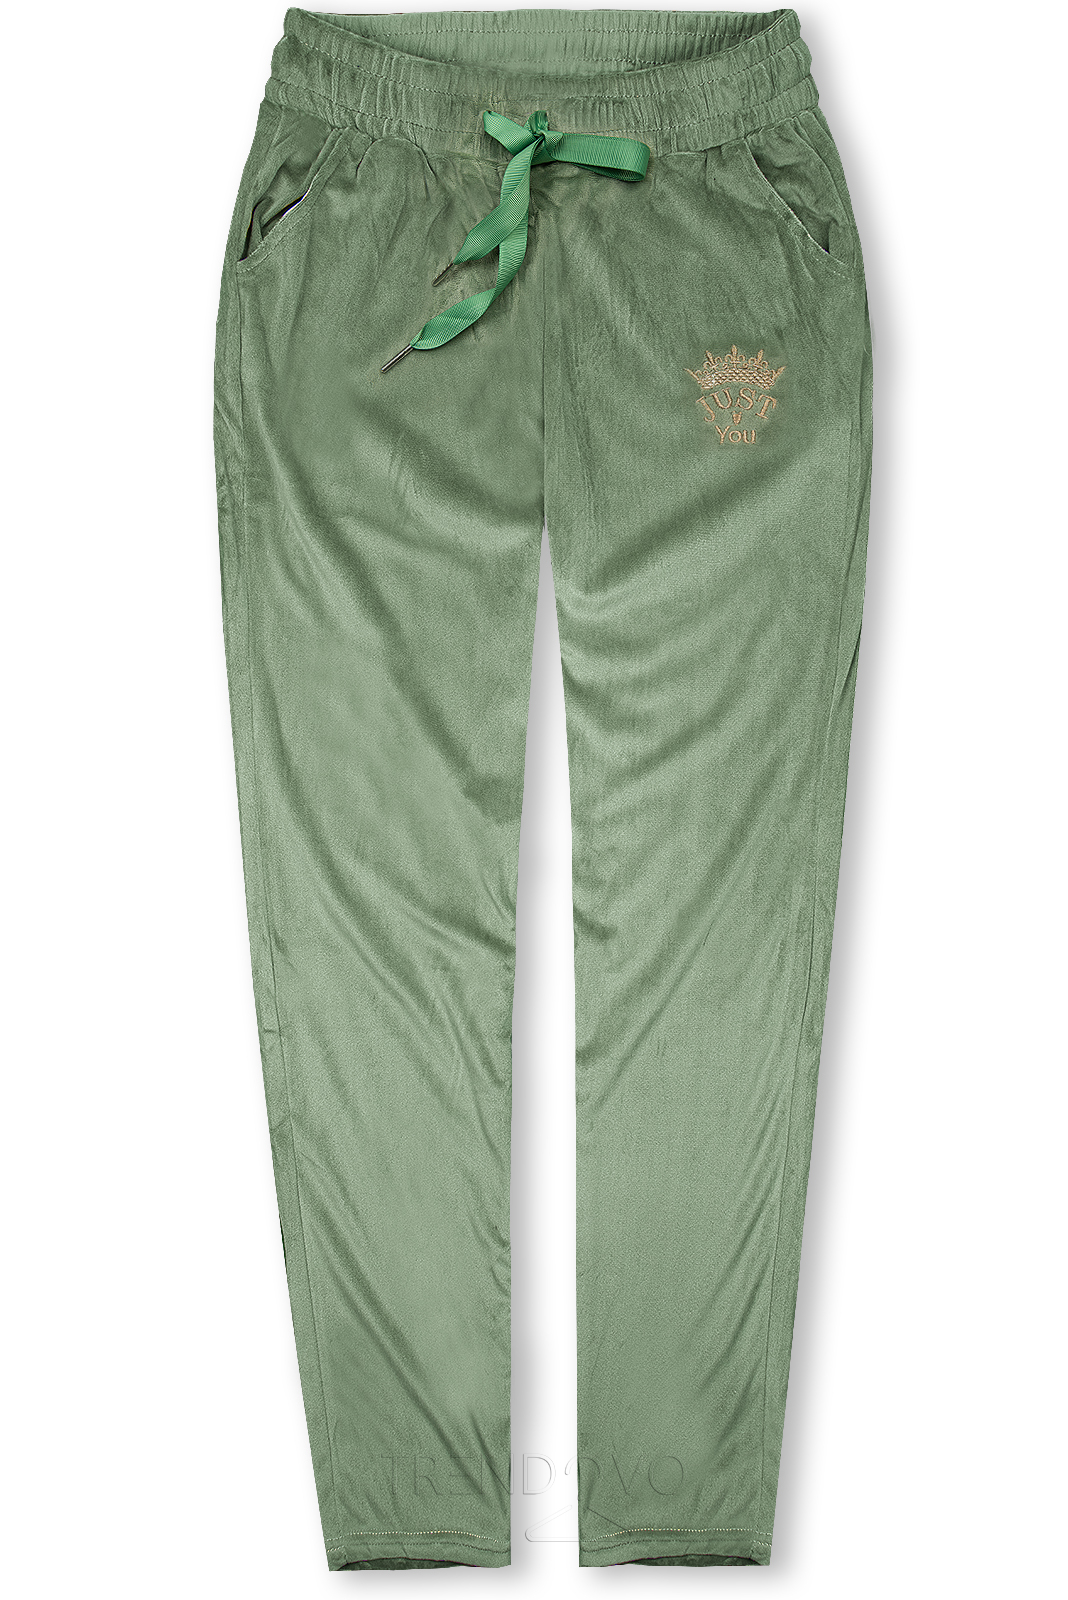 Zelené sametové teplákové kalhoty